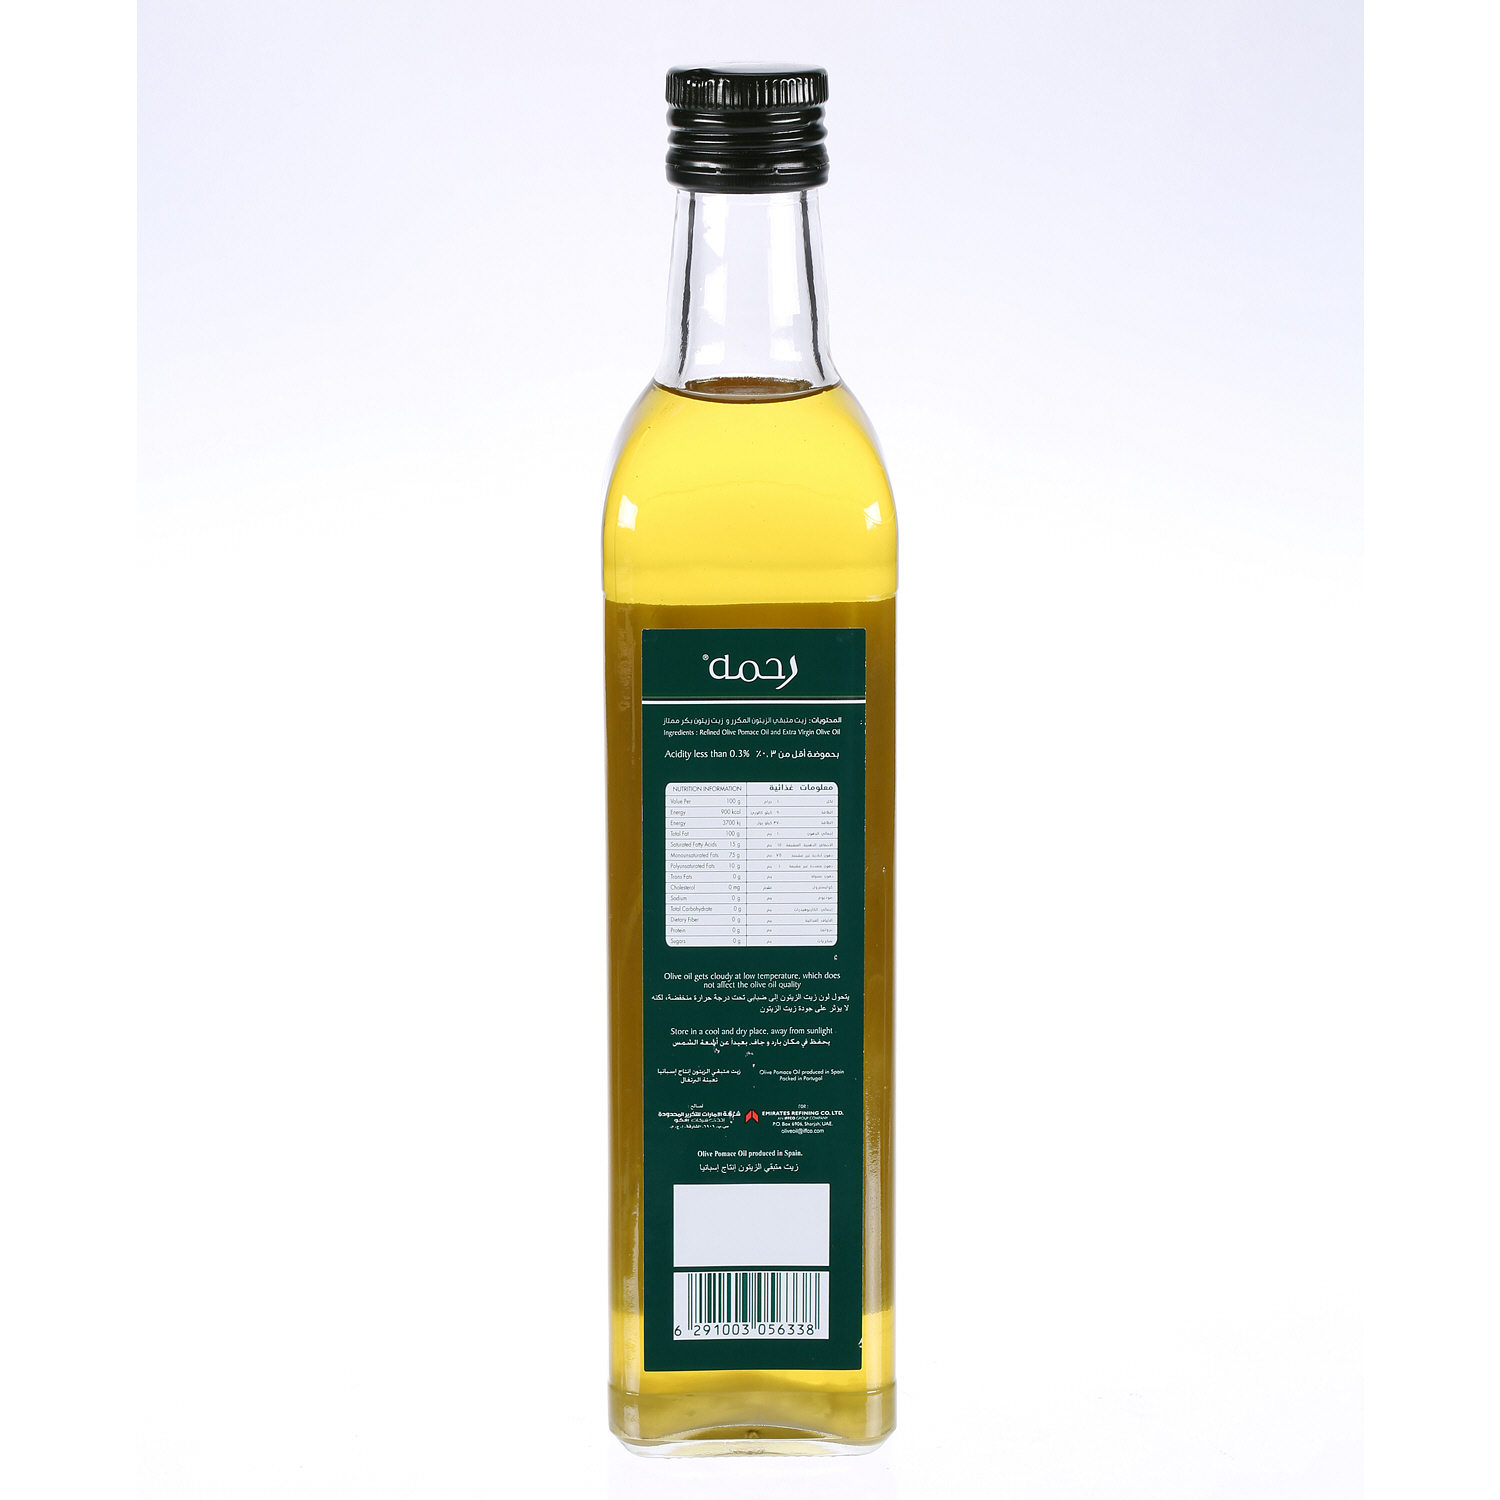 Rahma Virgin Olive Oil Glass Bottle 500 ml